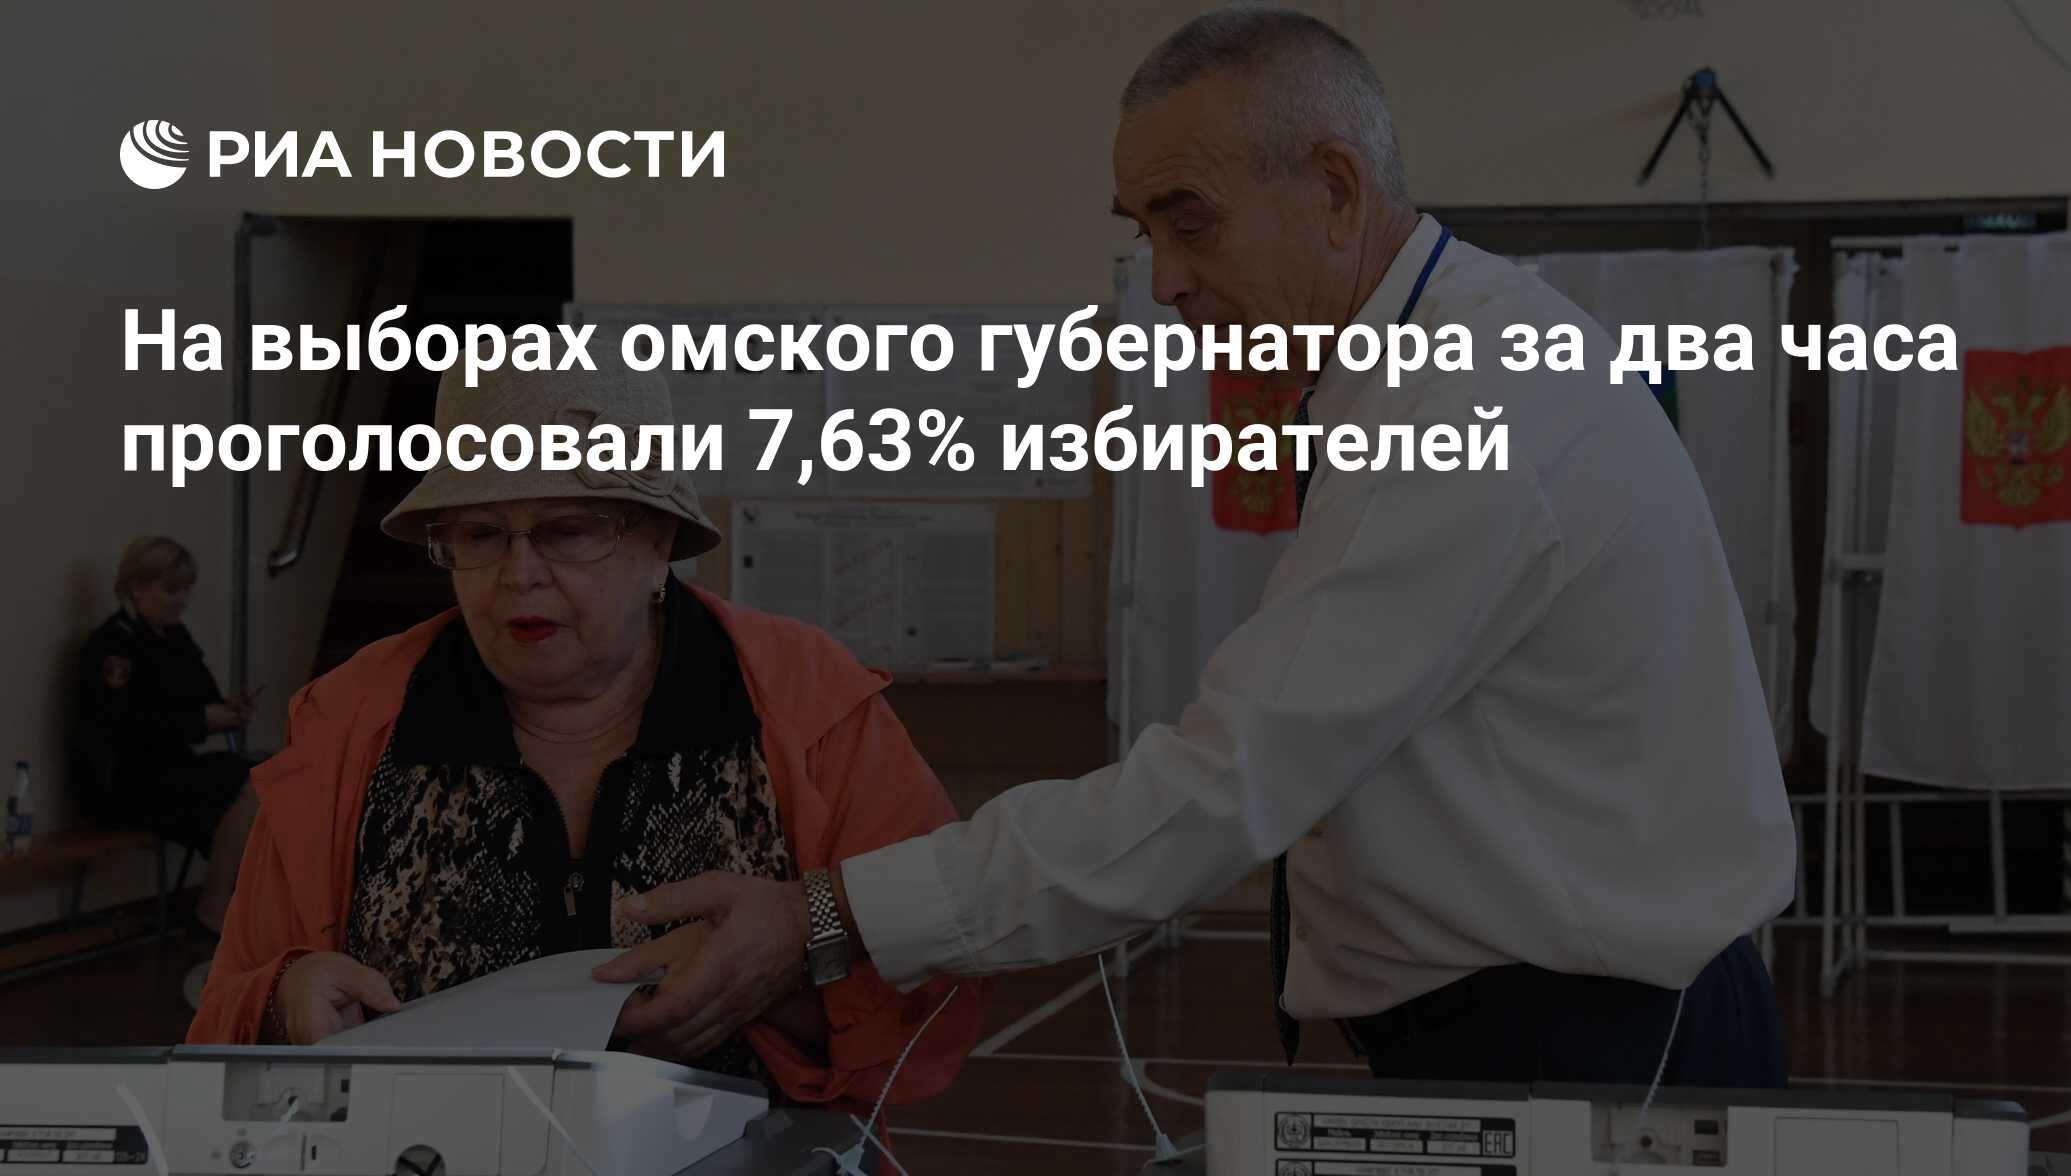 Результаты выборов в омске